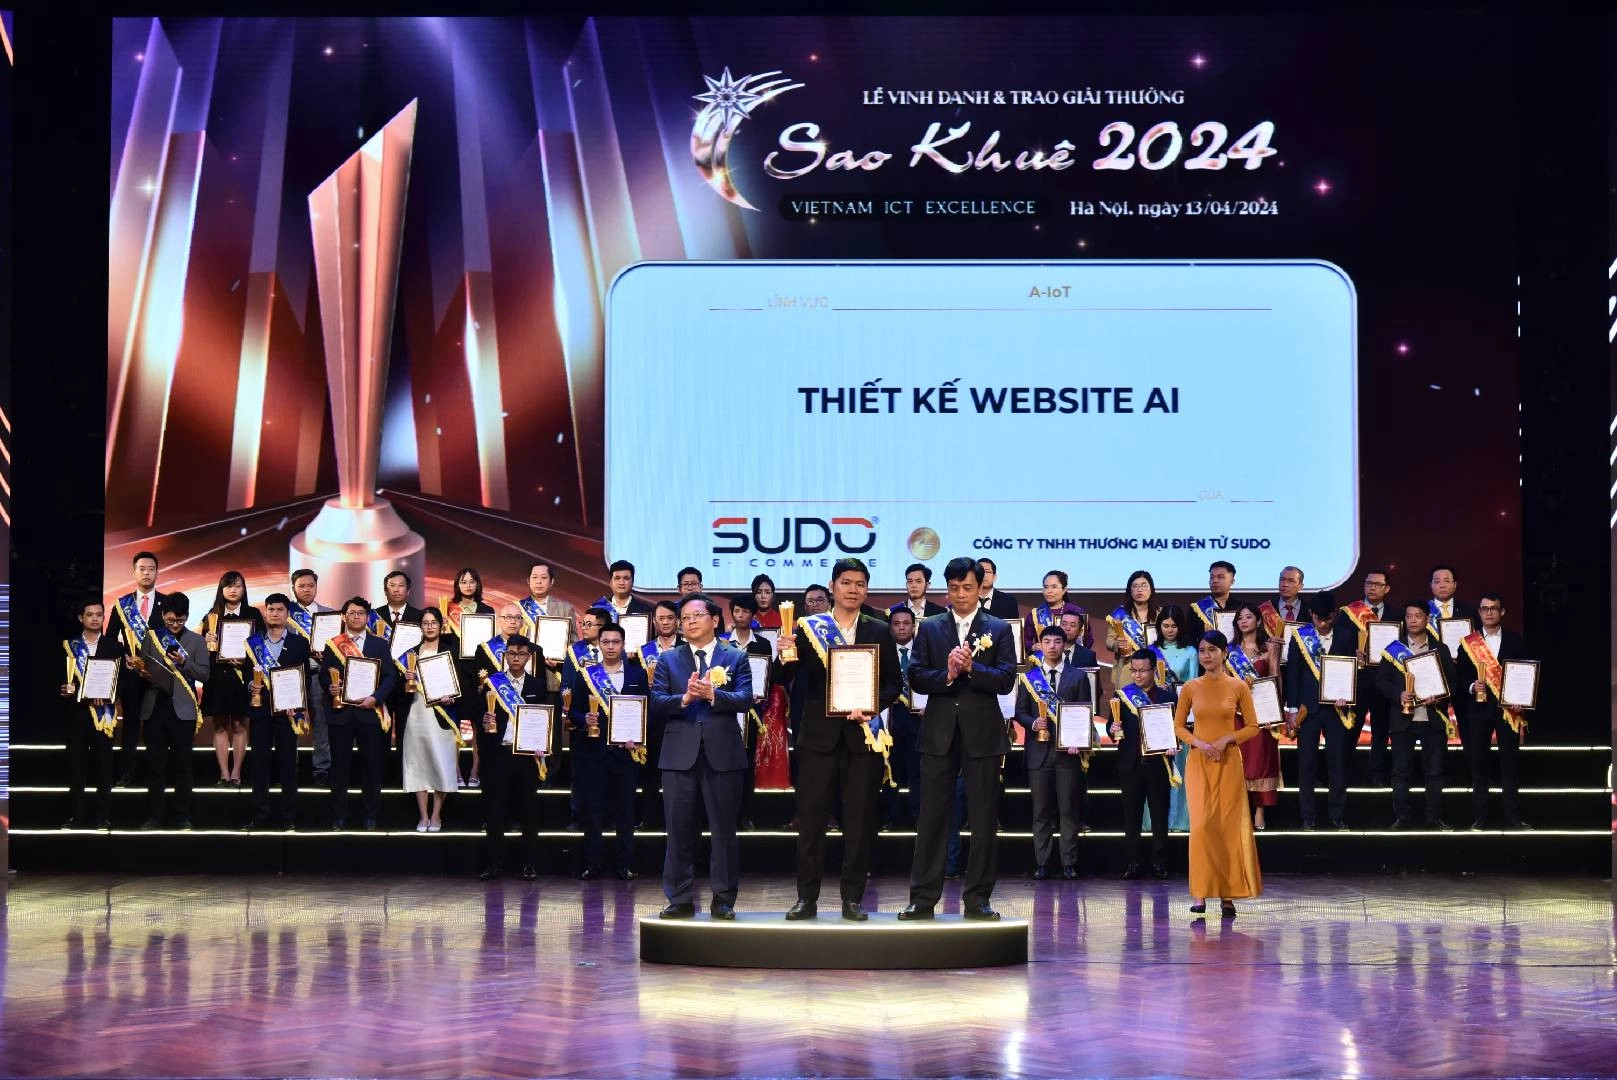 Sudo giành giải thưởng Sao Khuê 2024